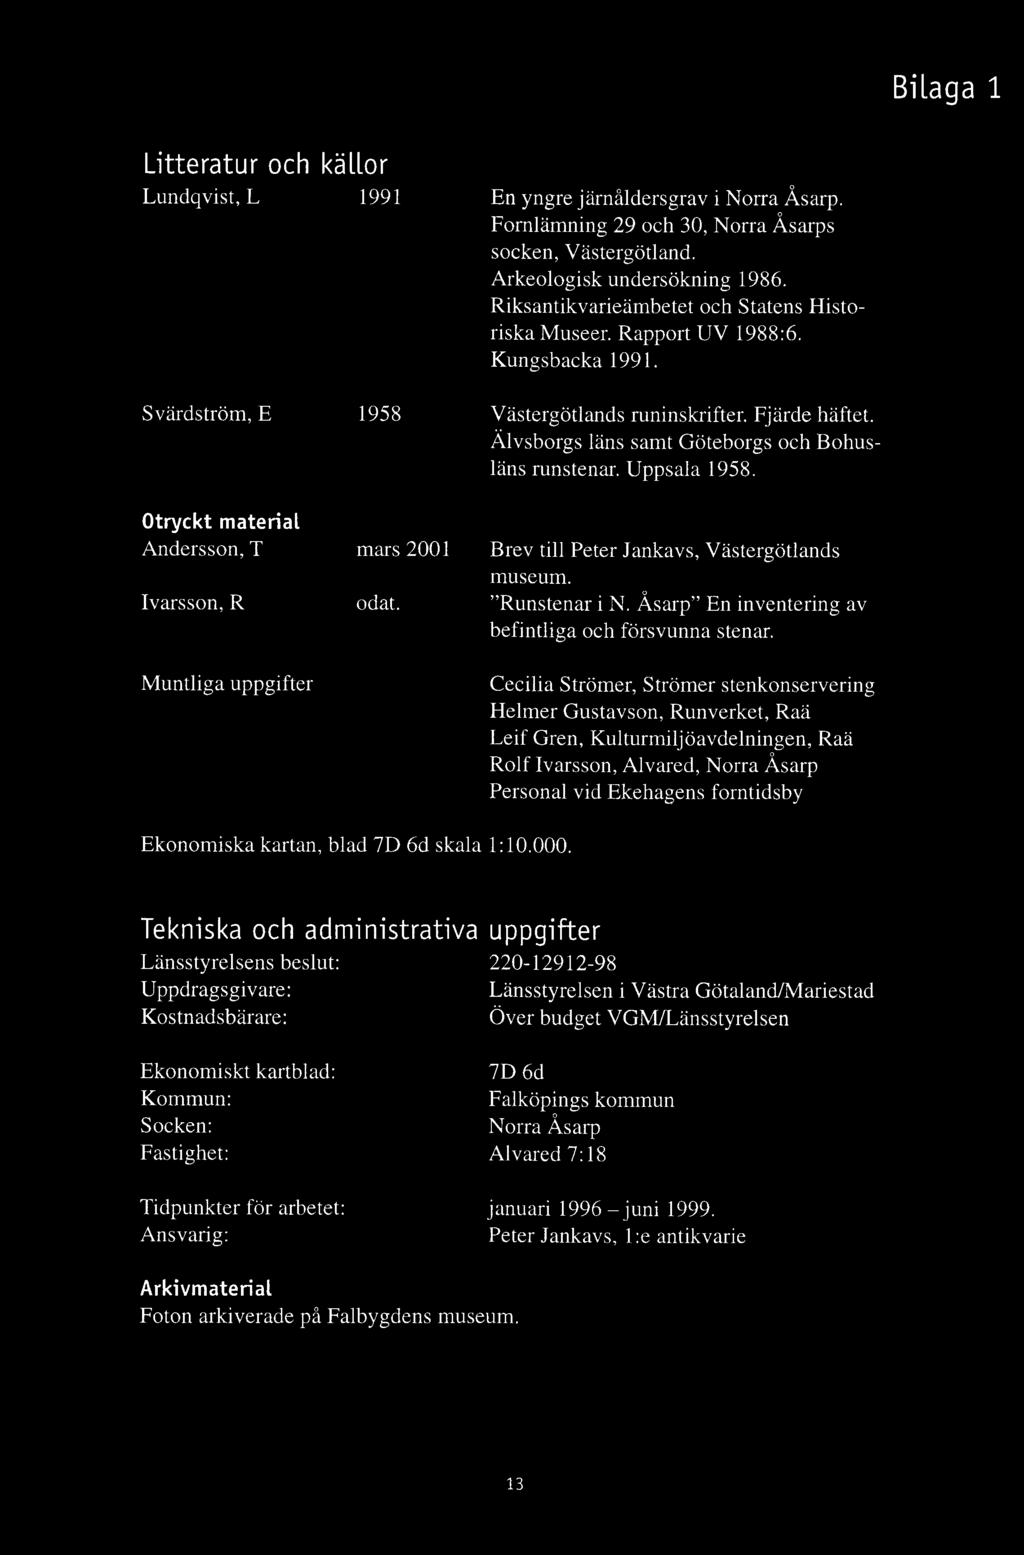 Älvsborgs läns samt Göteborgs och B ohusläns runstenar. U ppsala 1958. Otryckt material A ndersson, T Ivarsson, R M untliga uppgifter mars 2001 odat. Brev till Peter Jankavs, Västergötlands museum.